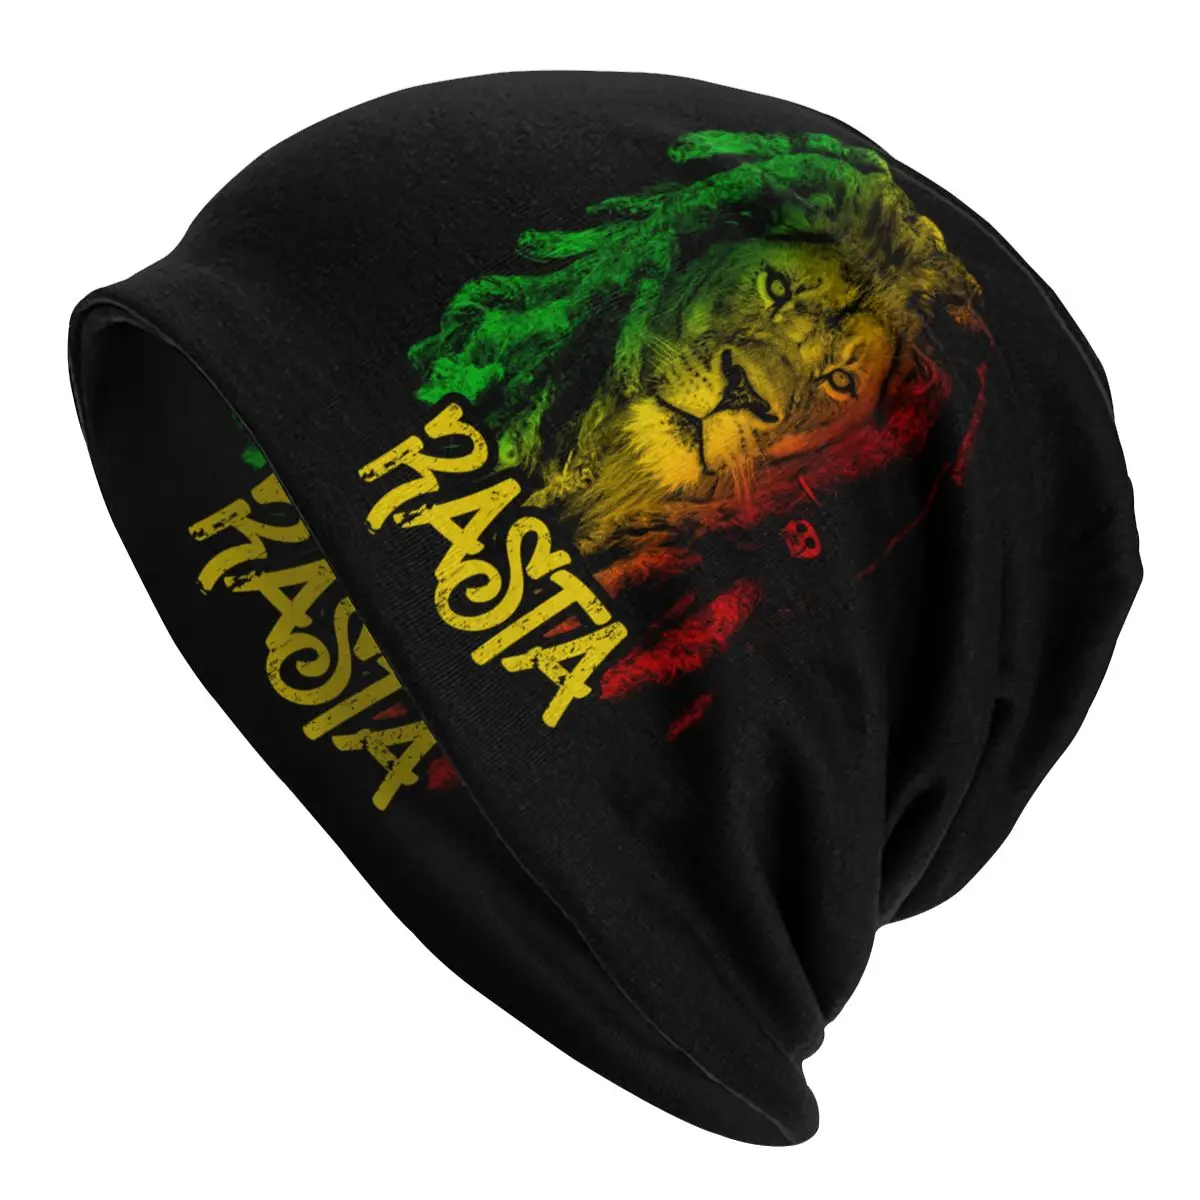 

Облегающая шапка Rasta с флагом Jamaica, зимняя теплая шапка унисекс, мужские и женские вязаные шапки, уличные шапки с ямайским львом, облегающие ш...